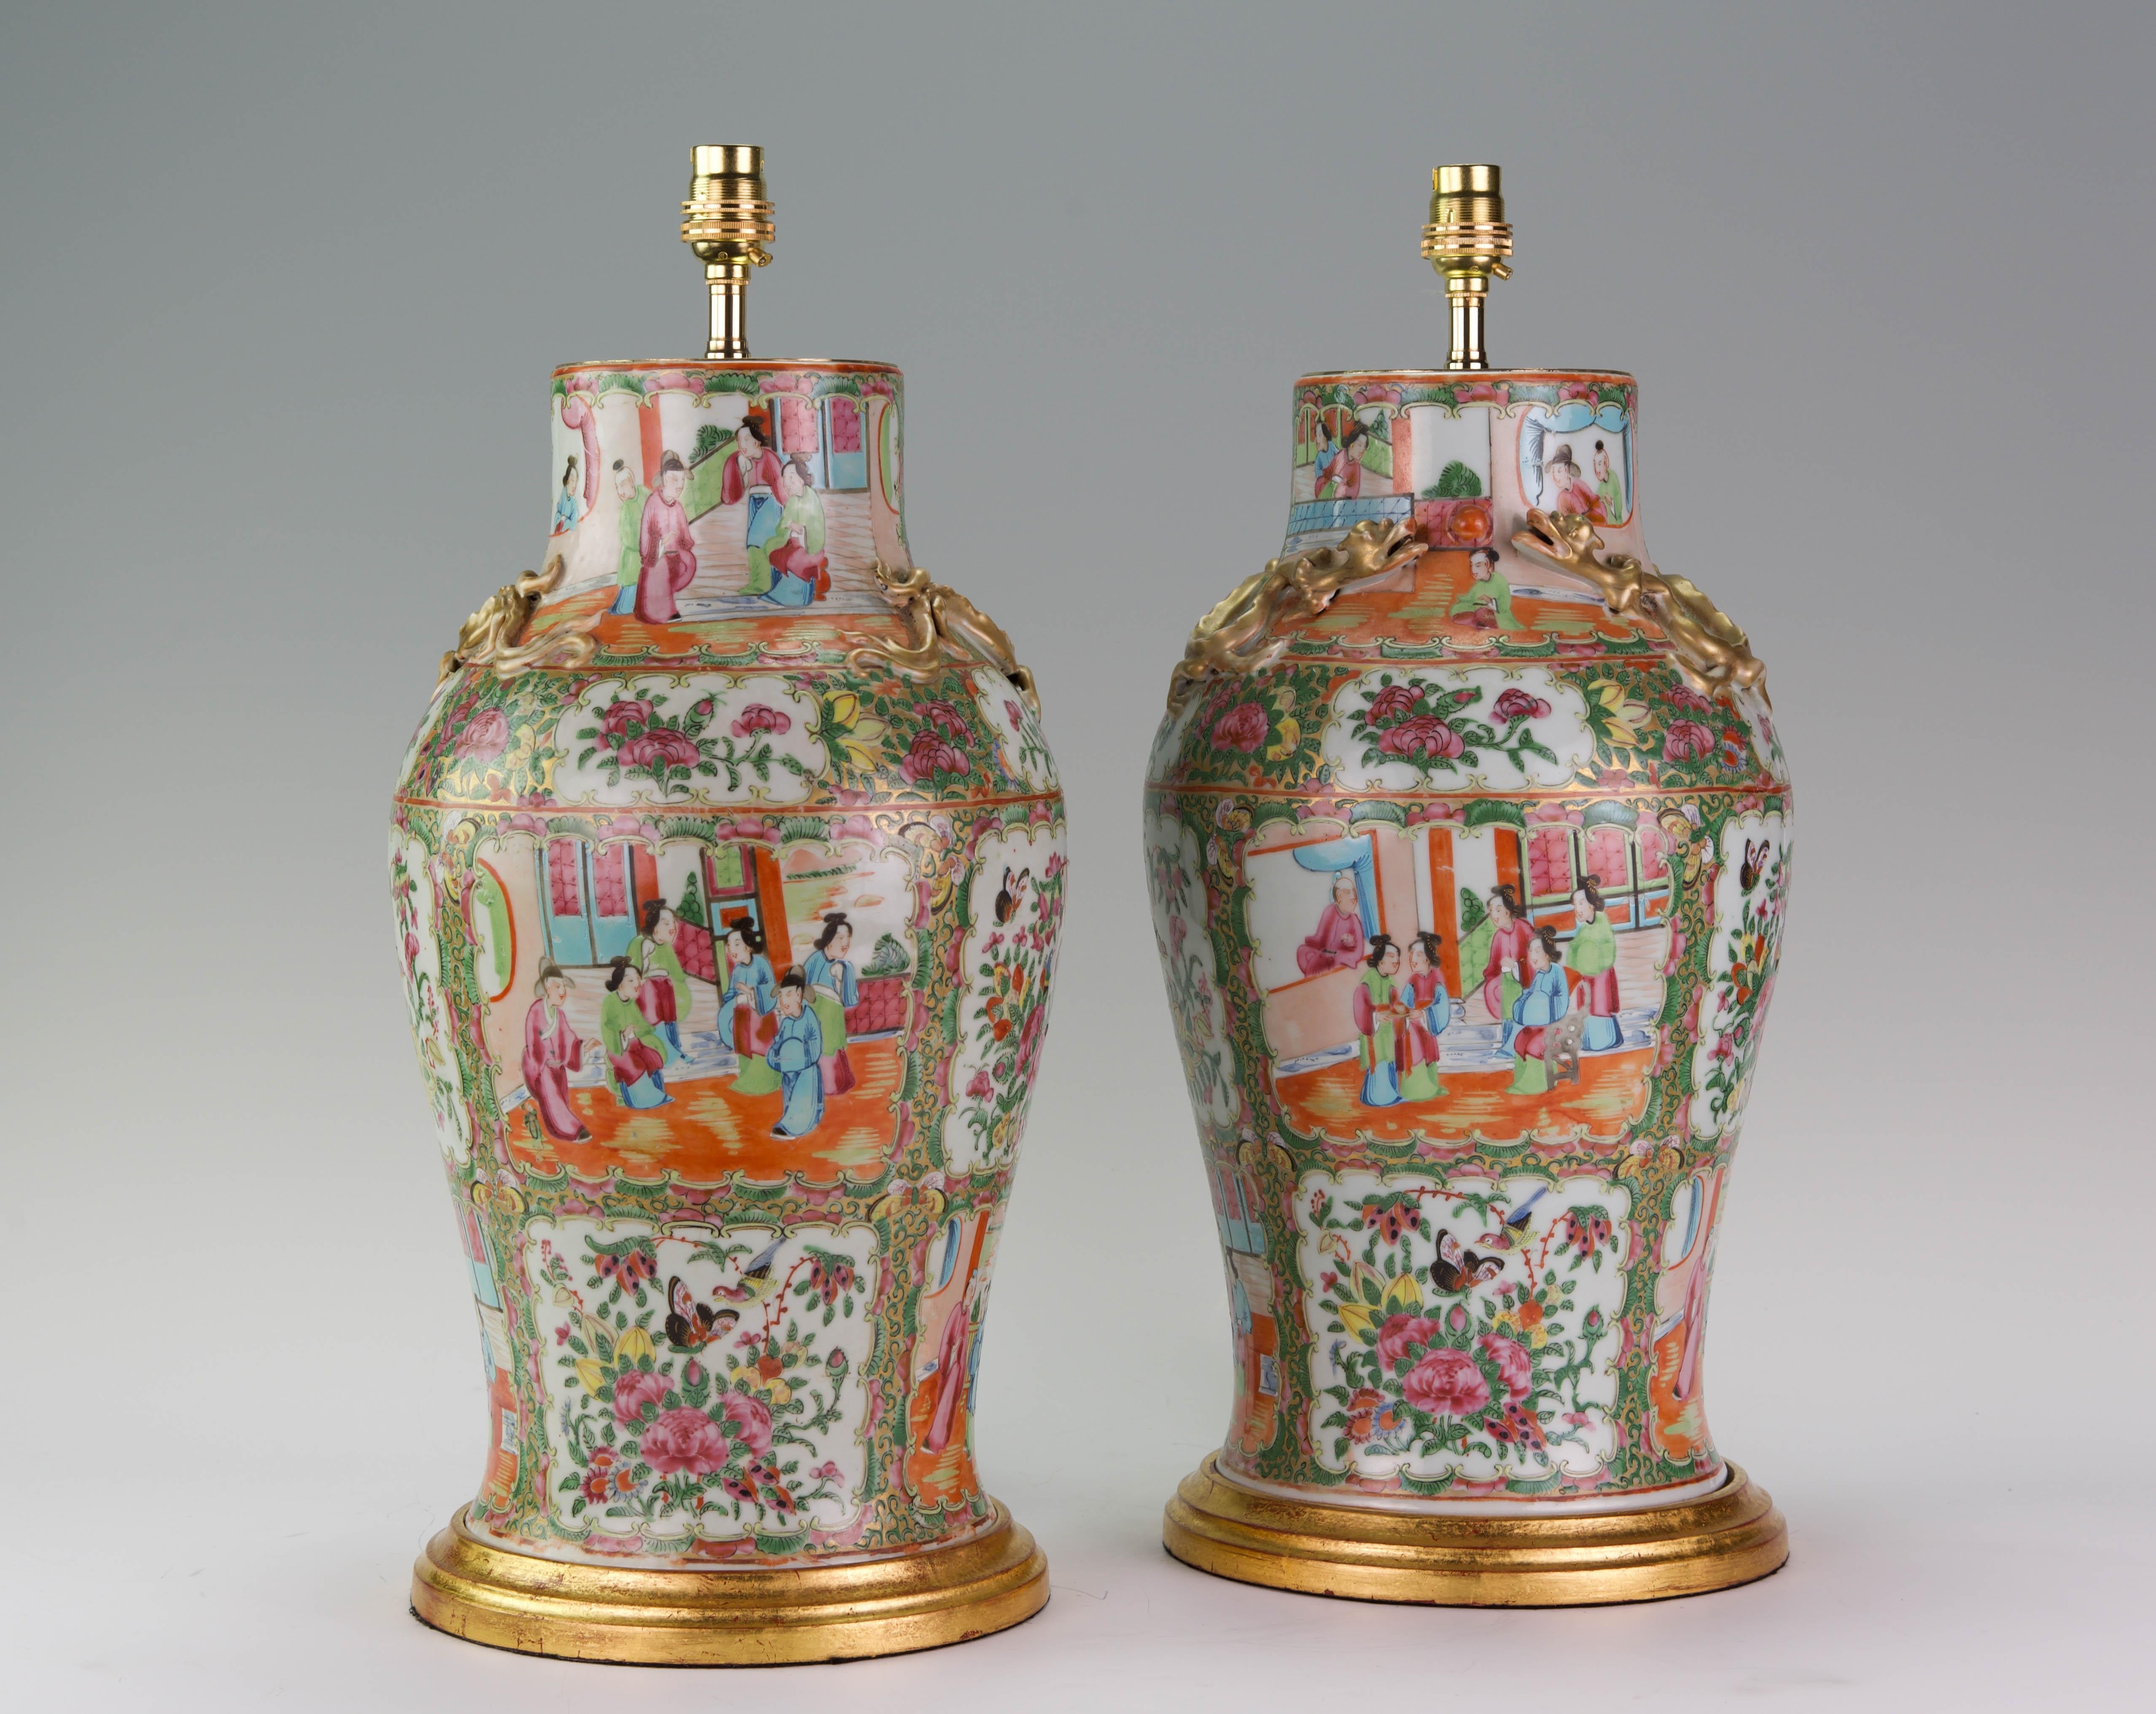 Paire de vases balustres en porcelaine émaillée de Canton, datant de la fin du XIXe siècle, décorés dans la palette typique du médaillon rose, avec des panneaux montrant des scènes de vie de cour avec des personnages dans des pavillons et des